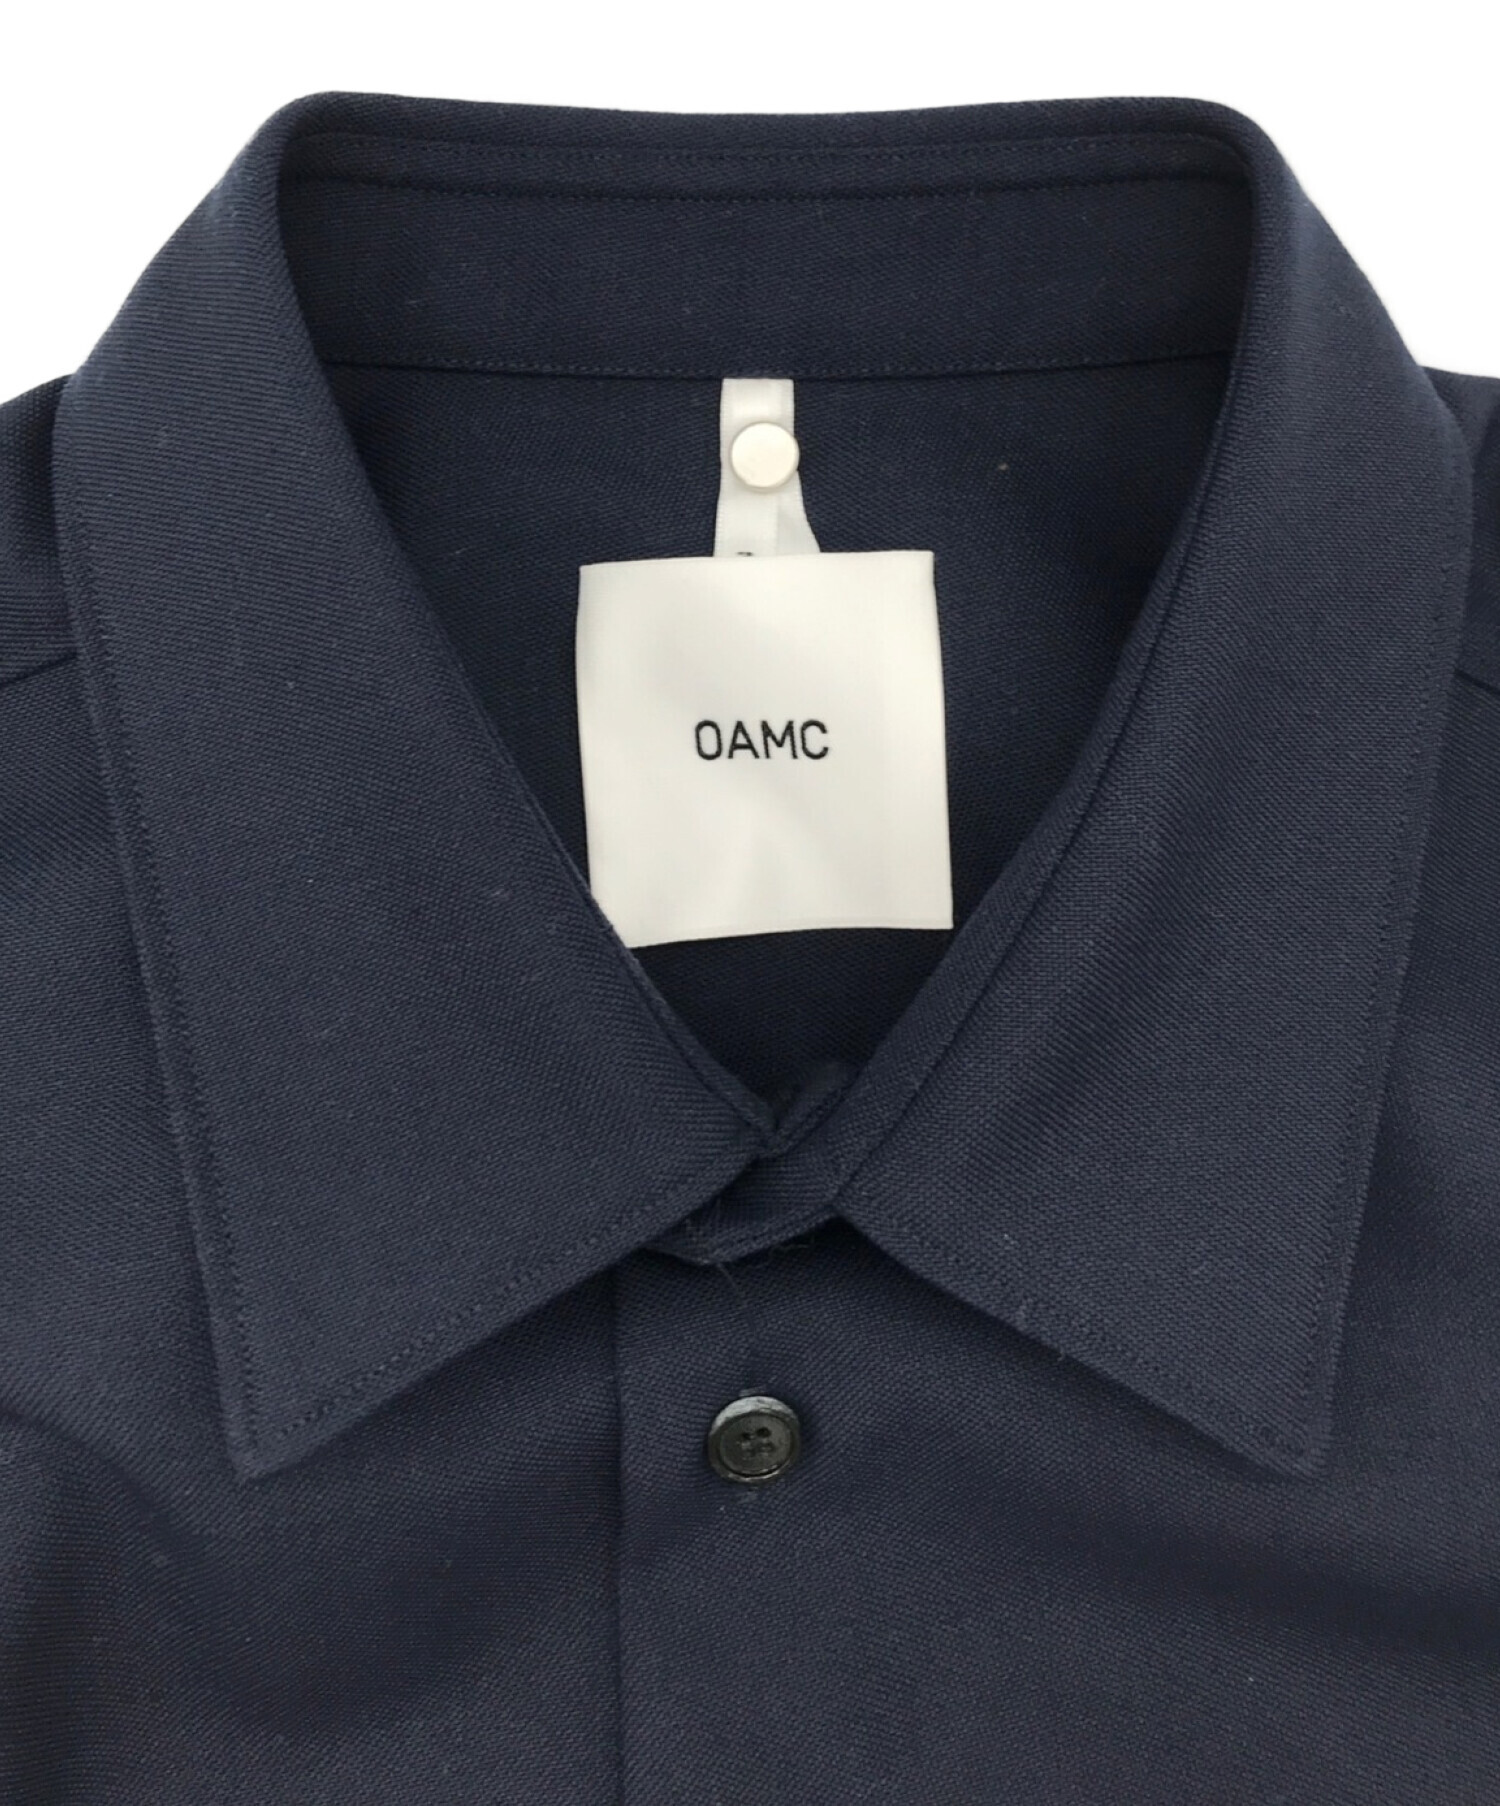 OAMC (オーエーエムシー) オーバーウールシャツ ネイビー サイズ:M